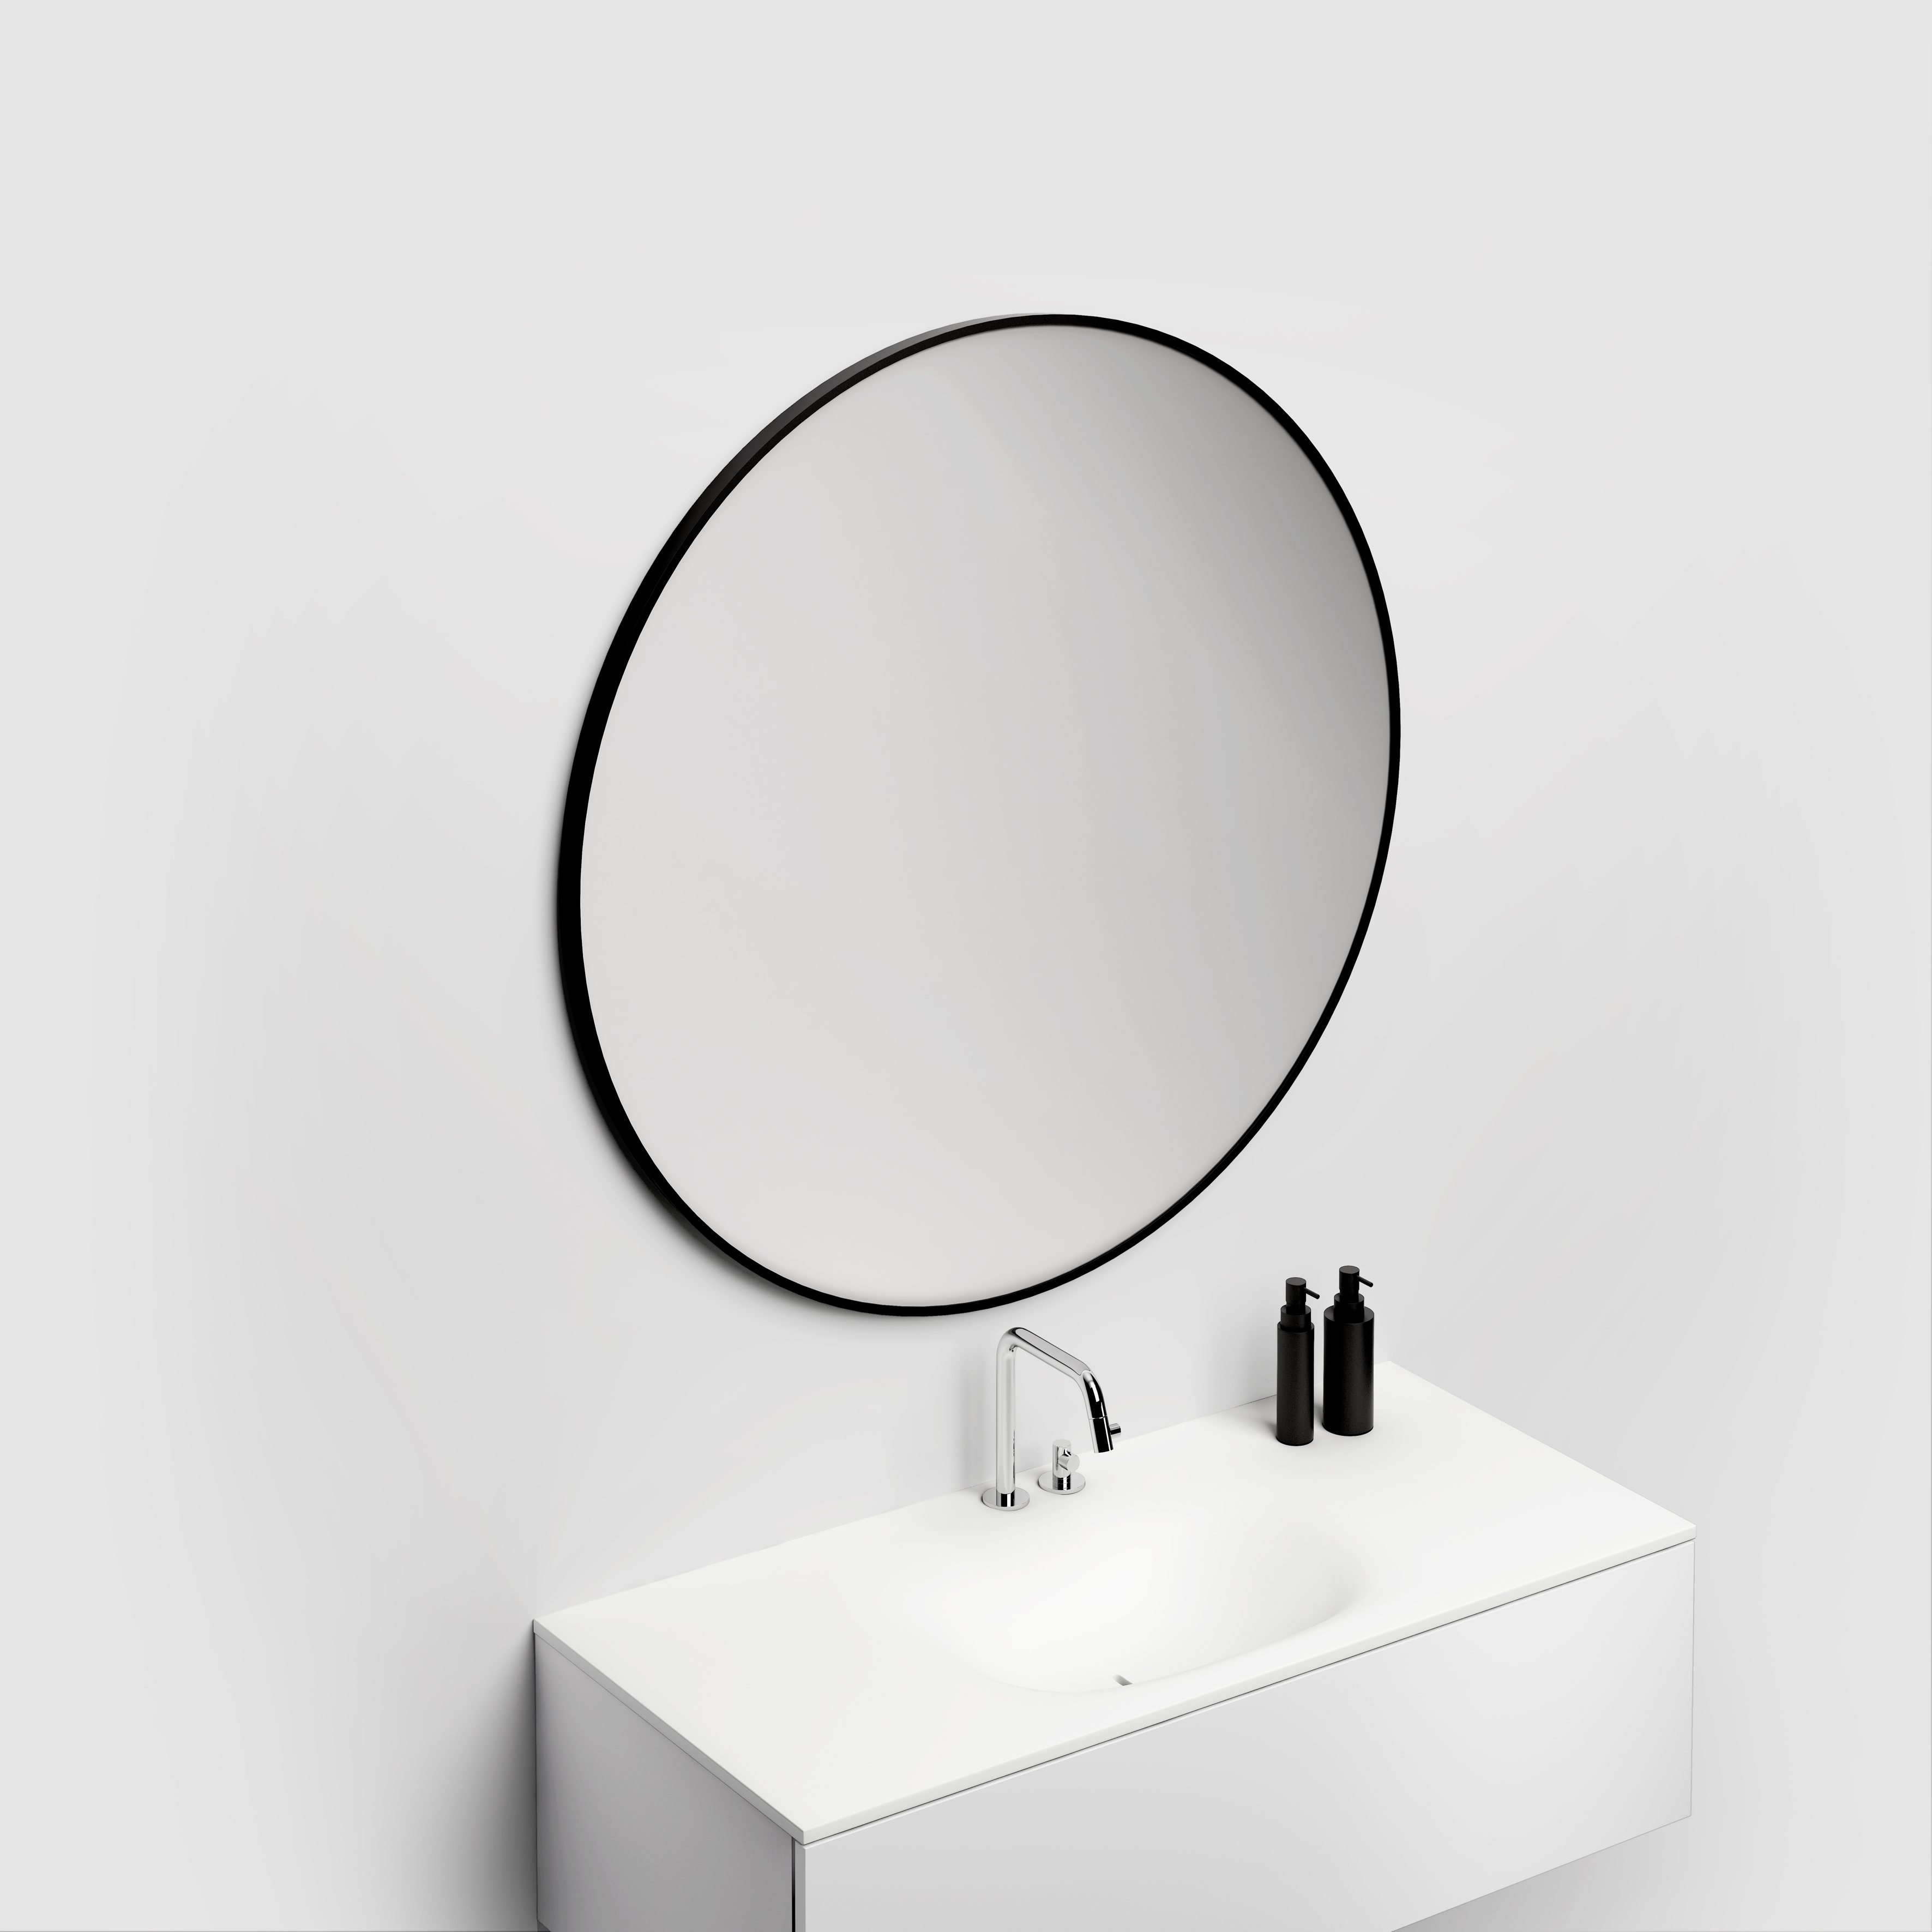 Uitgraving Uitpakken beneden Look at Me spiegels pp geslepen > Clou > Sanitair > Sanispecials.nl | Echt  alles voor je badkamer, toilet & keuken!